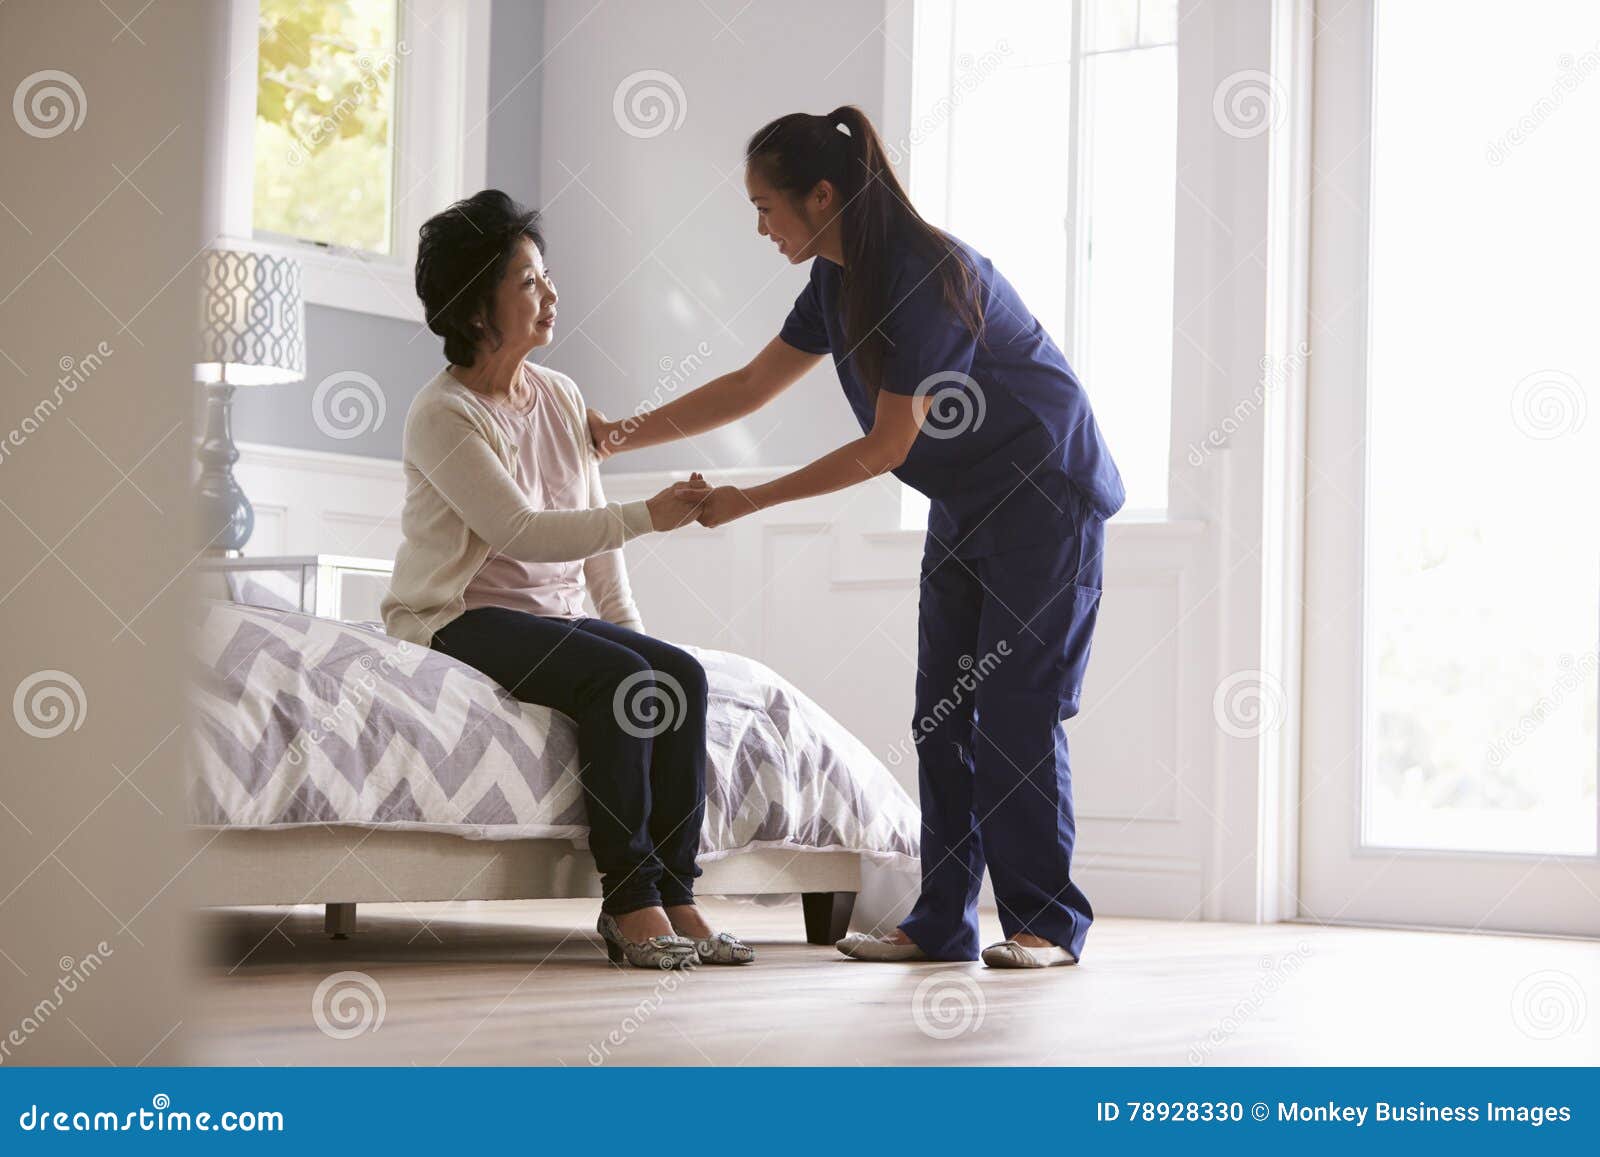 Nurse Making Home Visit To Senior Woman Stock Photo Image Of Nursing